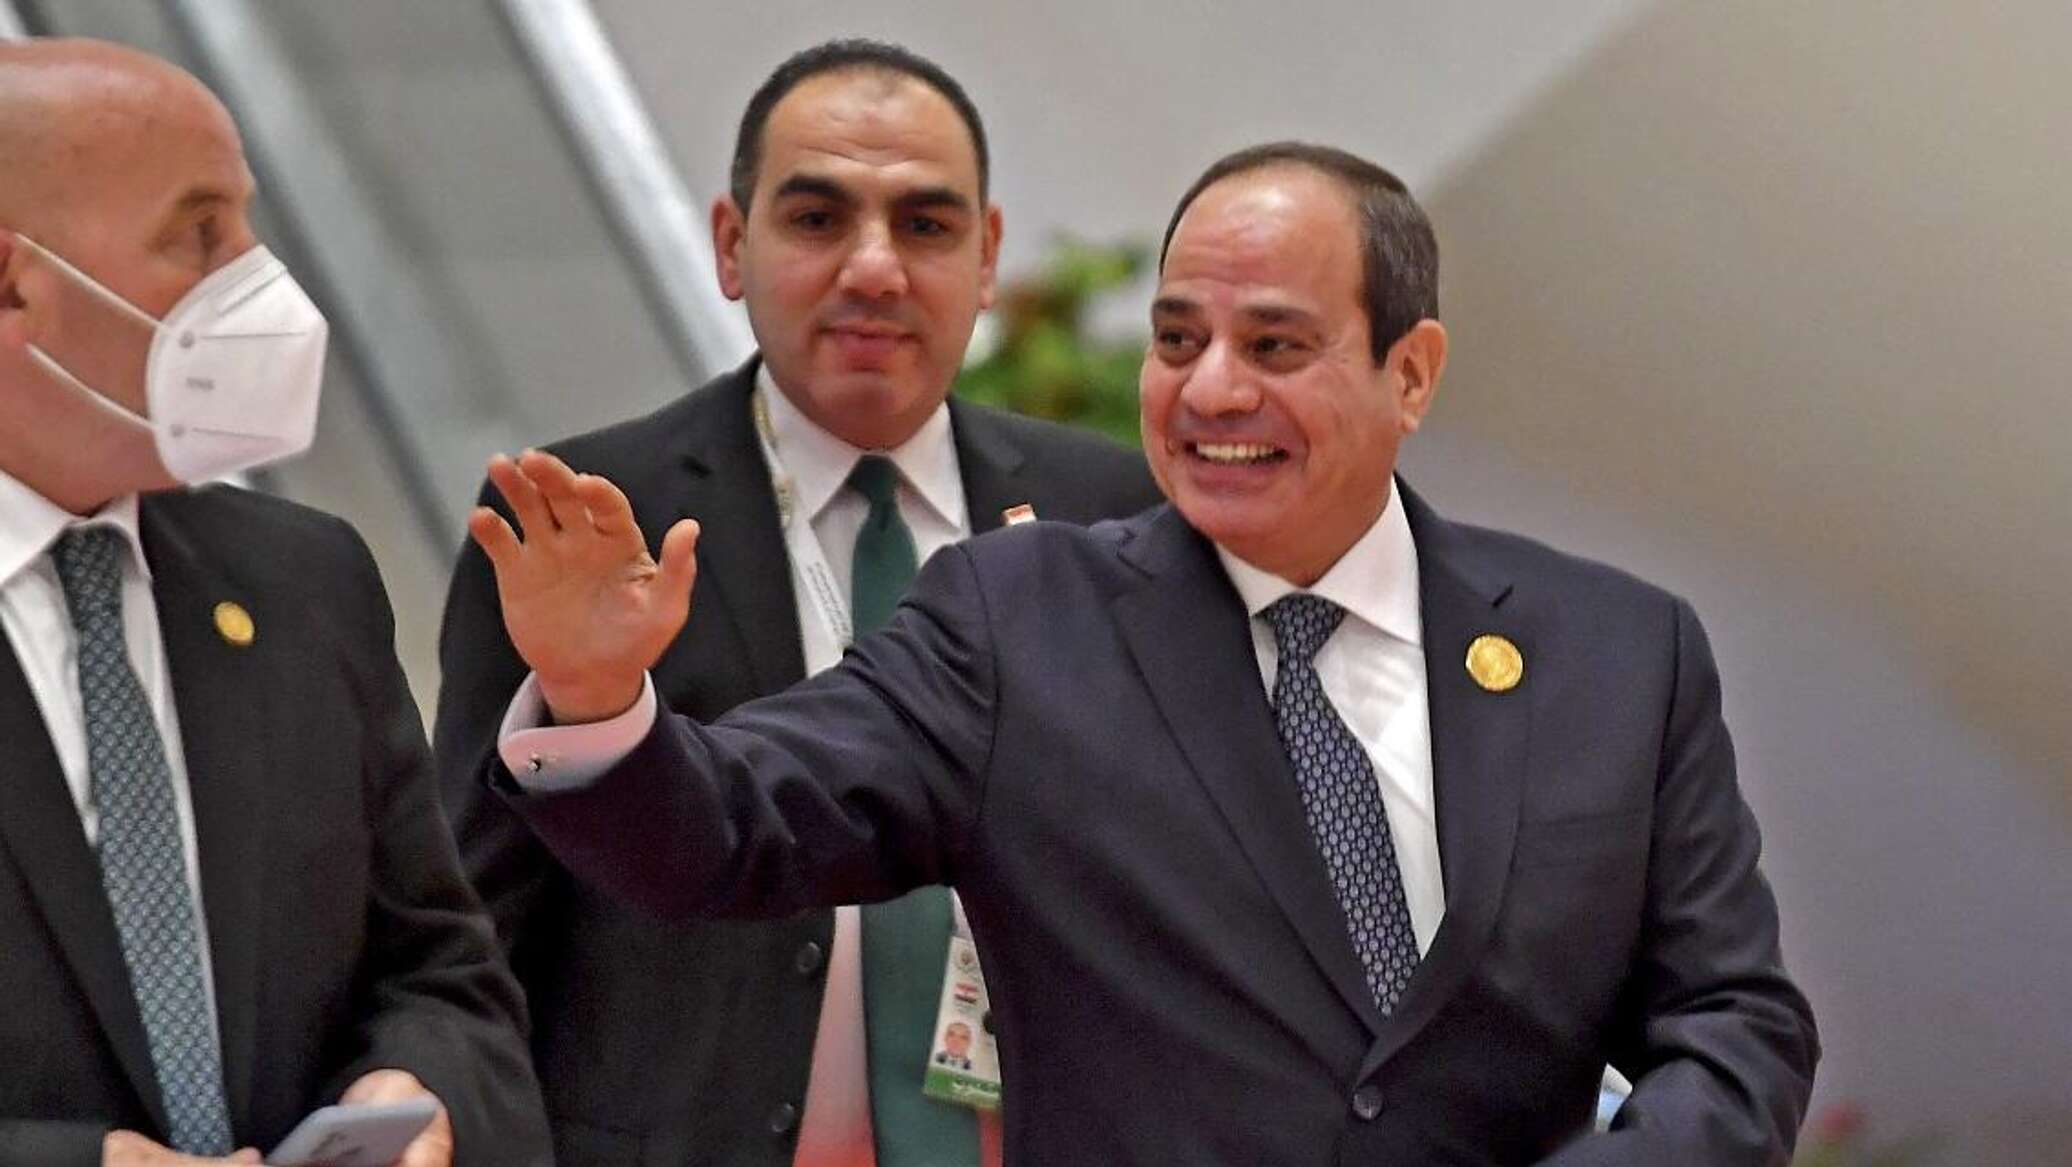 مصر... انطلاق عملية التصويت في الانتخابات الرئاسية بين 4 مرشحين أبرزهم السيسي